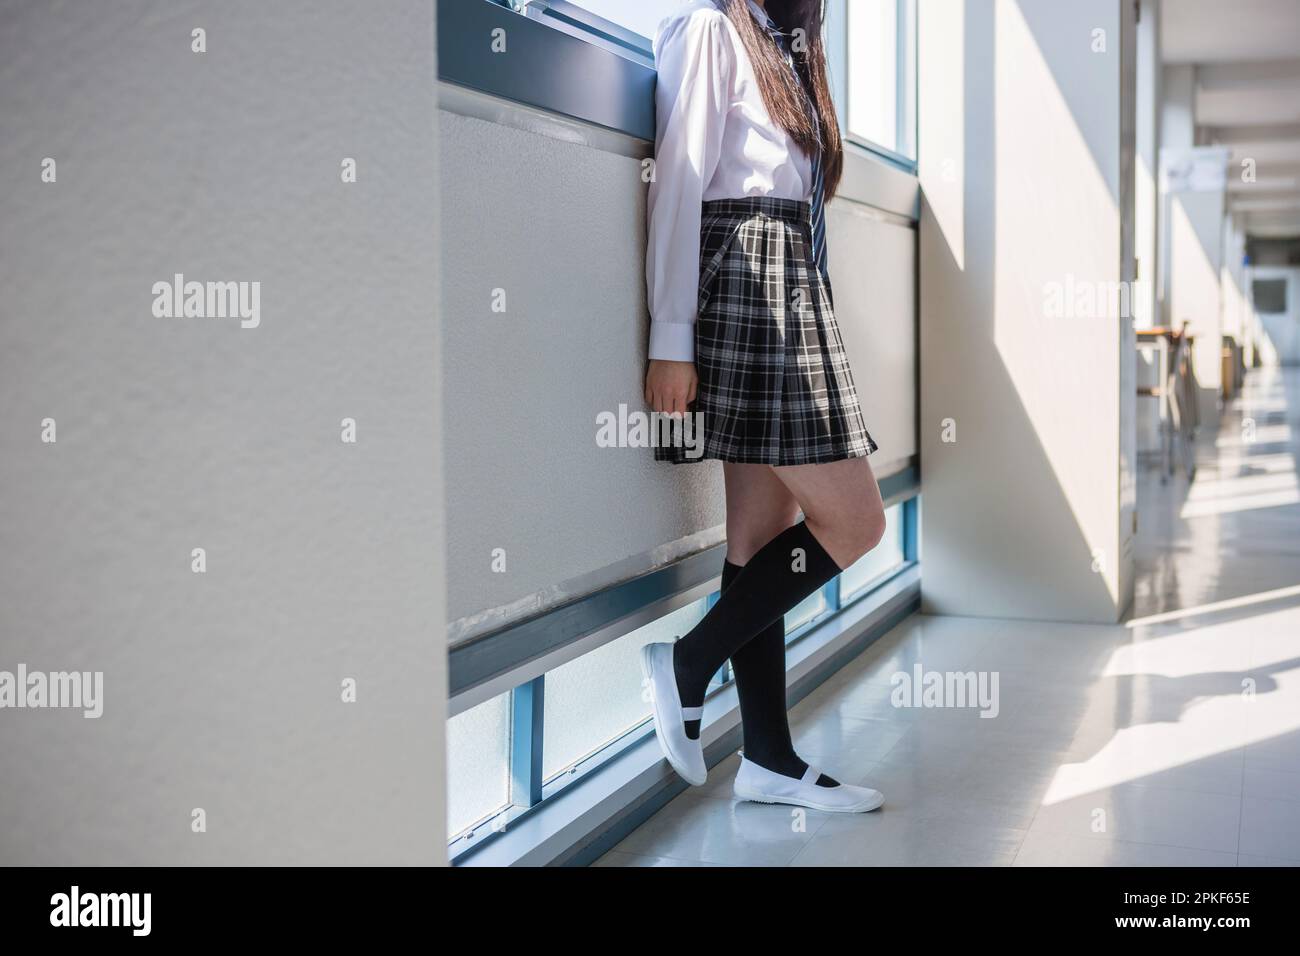 Junior high school girls standing in the hallway Stock Photo